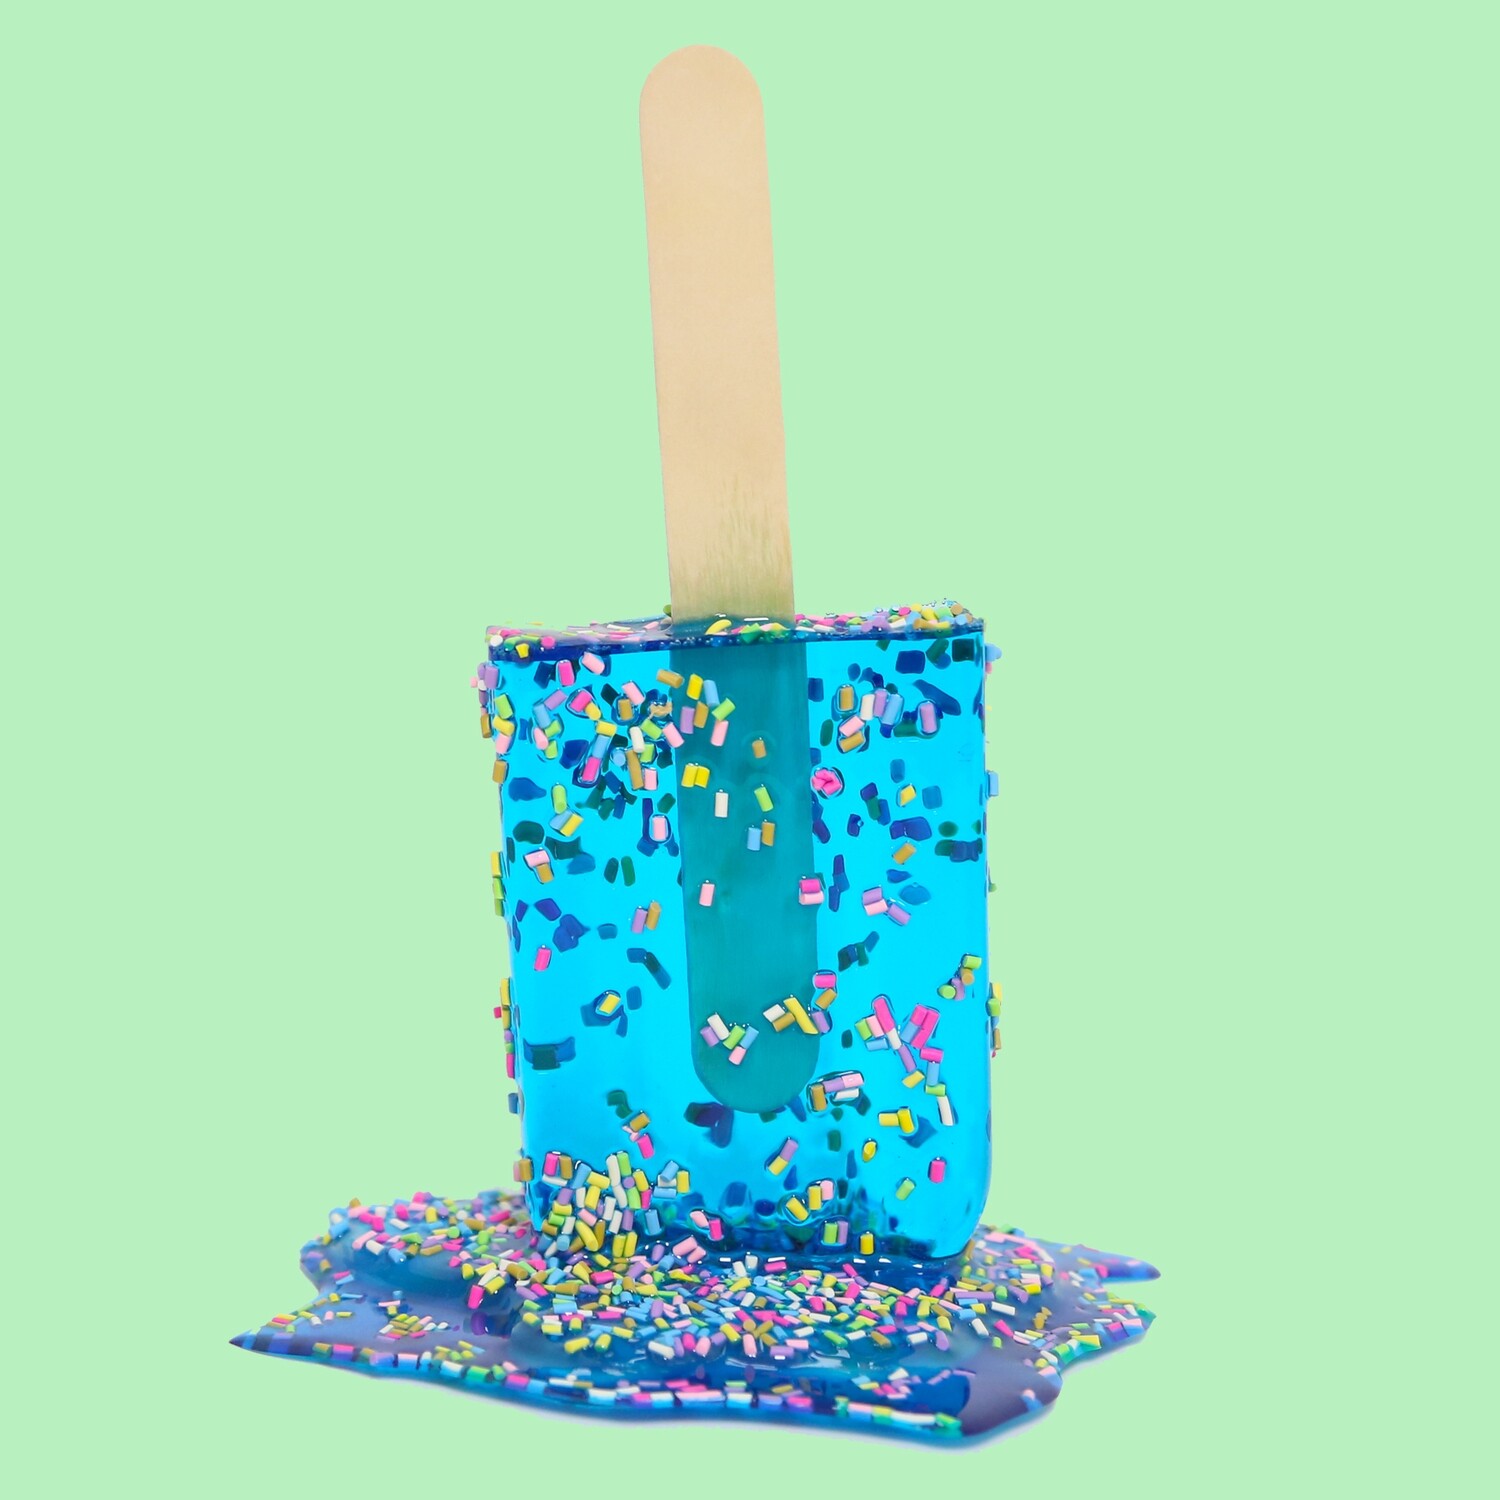 Melting Popsicle Art - Big Aqua Sprinkle Pop - Original Melting Pops